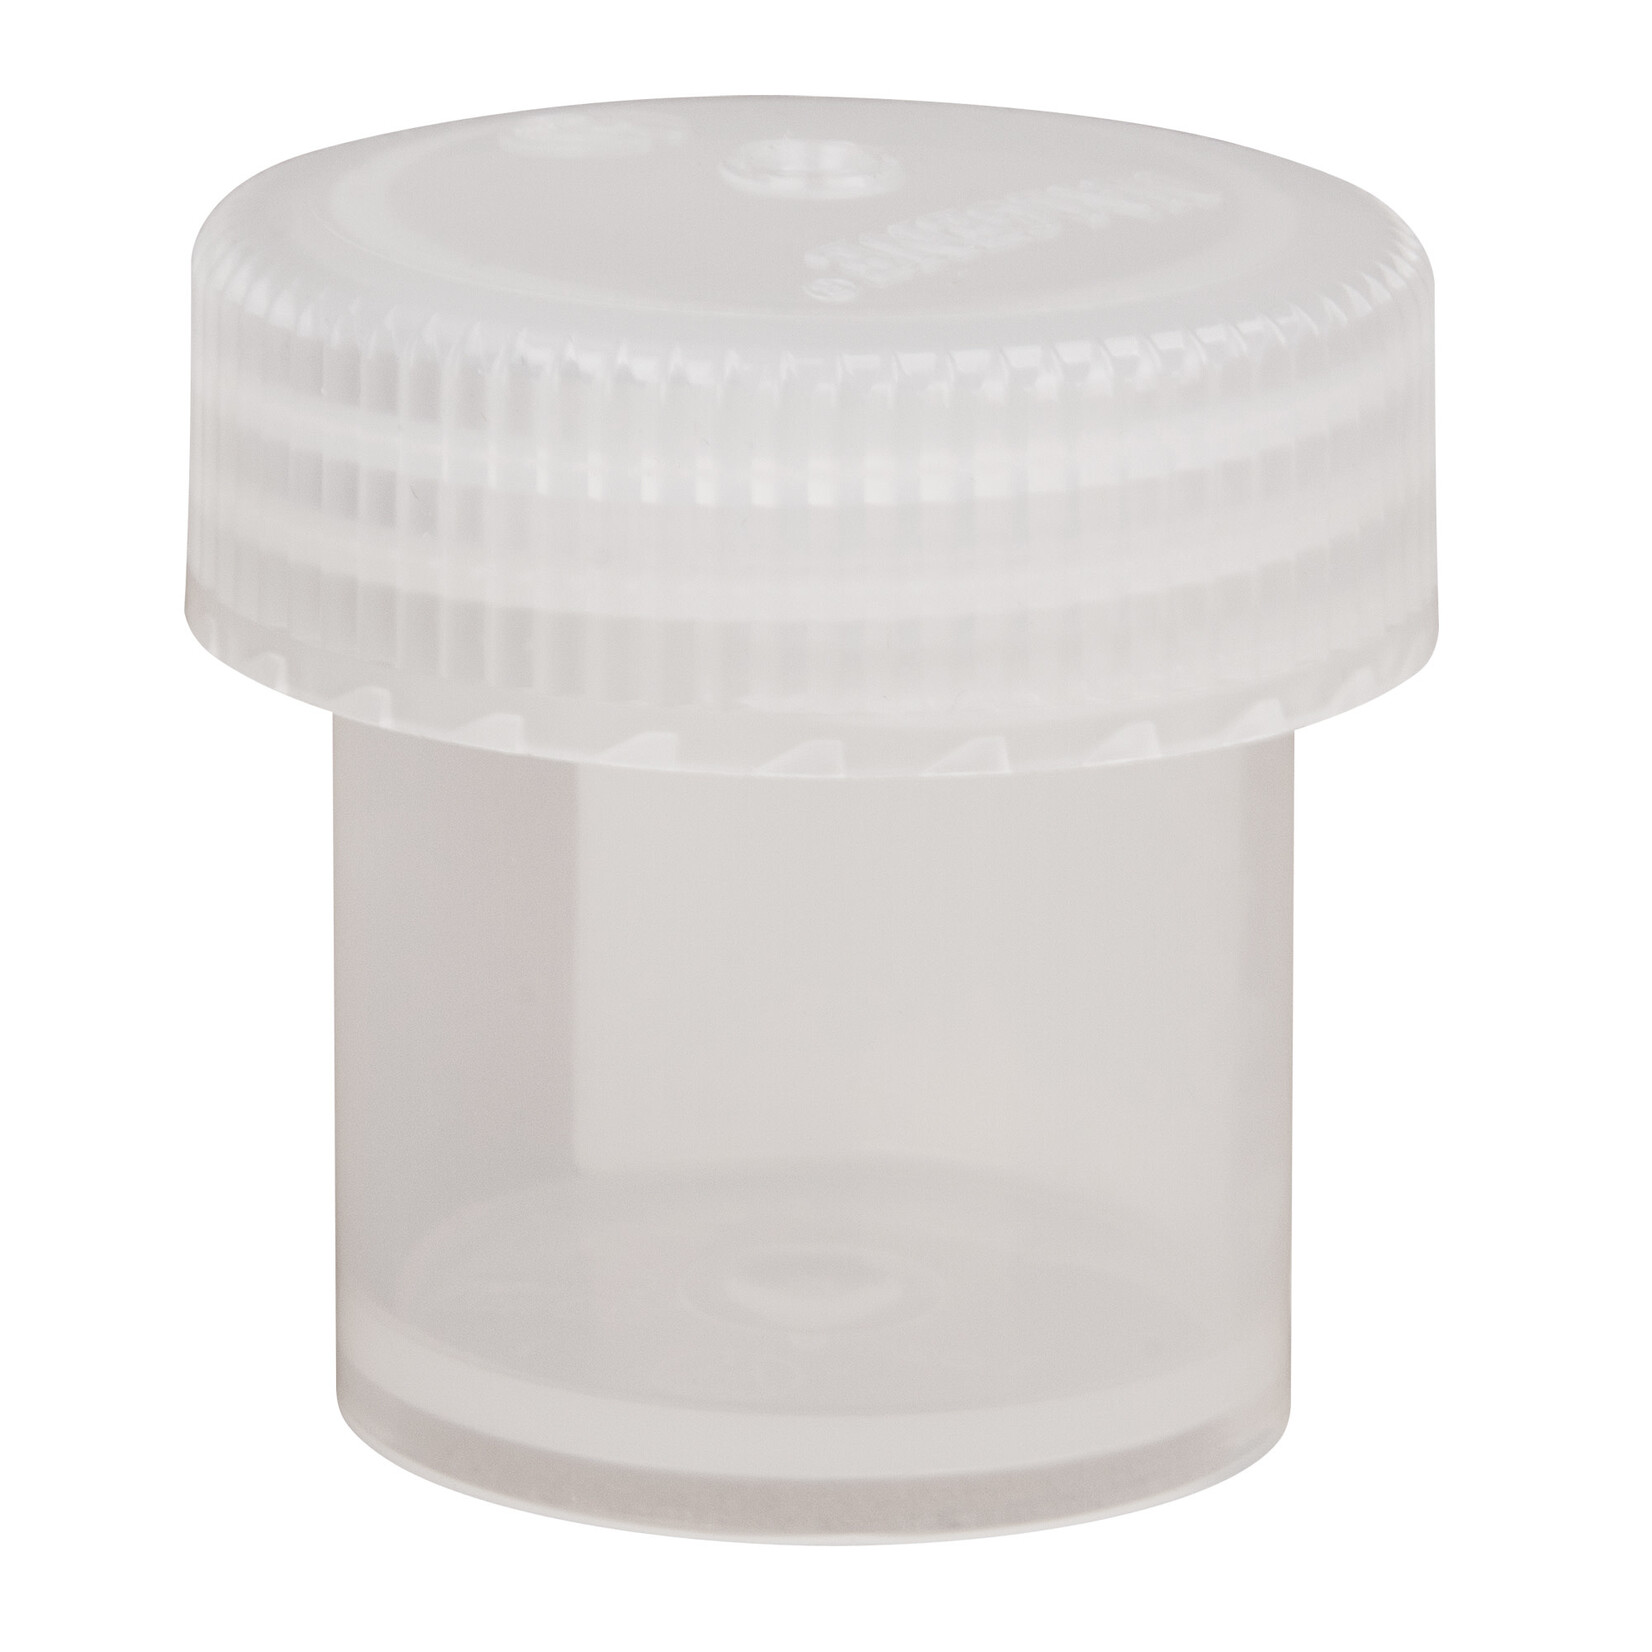 Nalgene Pot à côtés droits 1 oz (30 ml) Straight Sided Jars